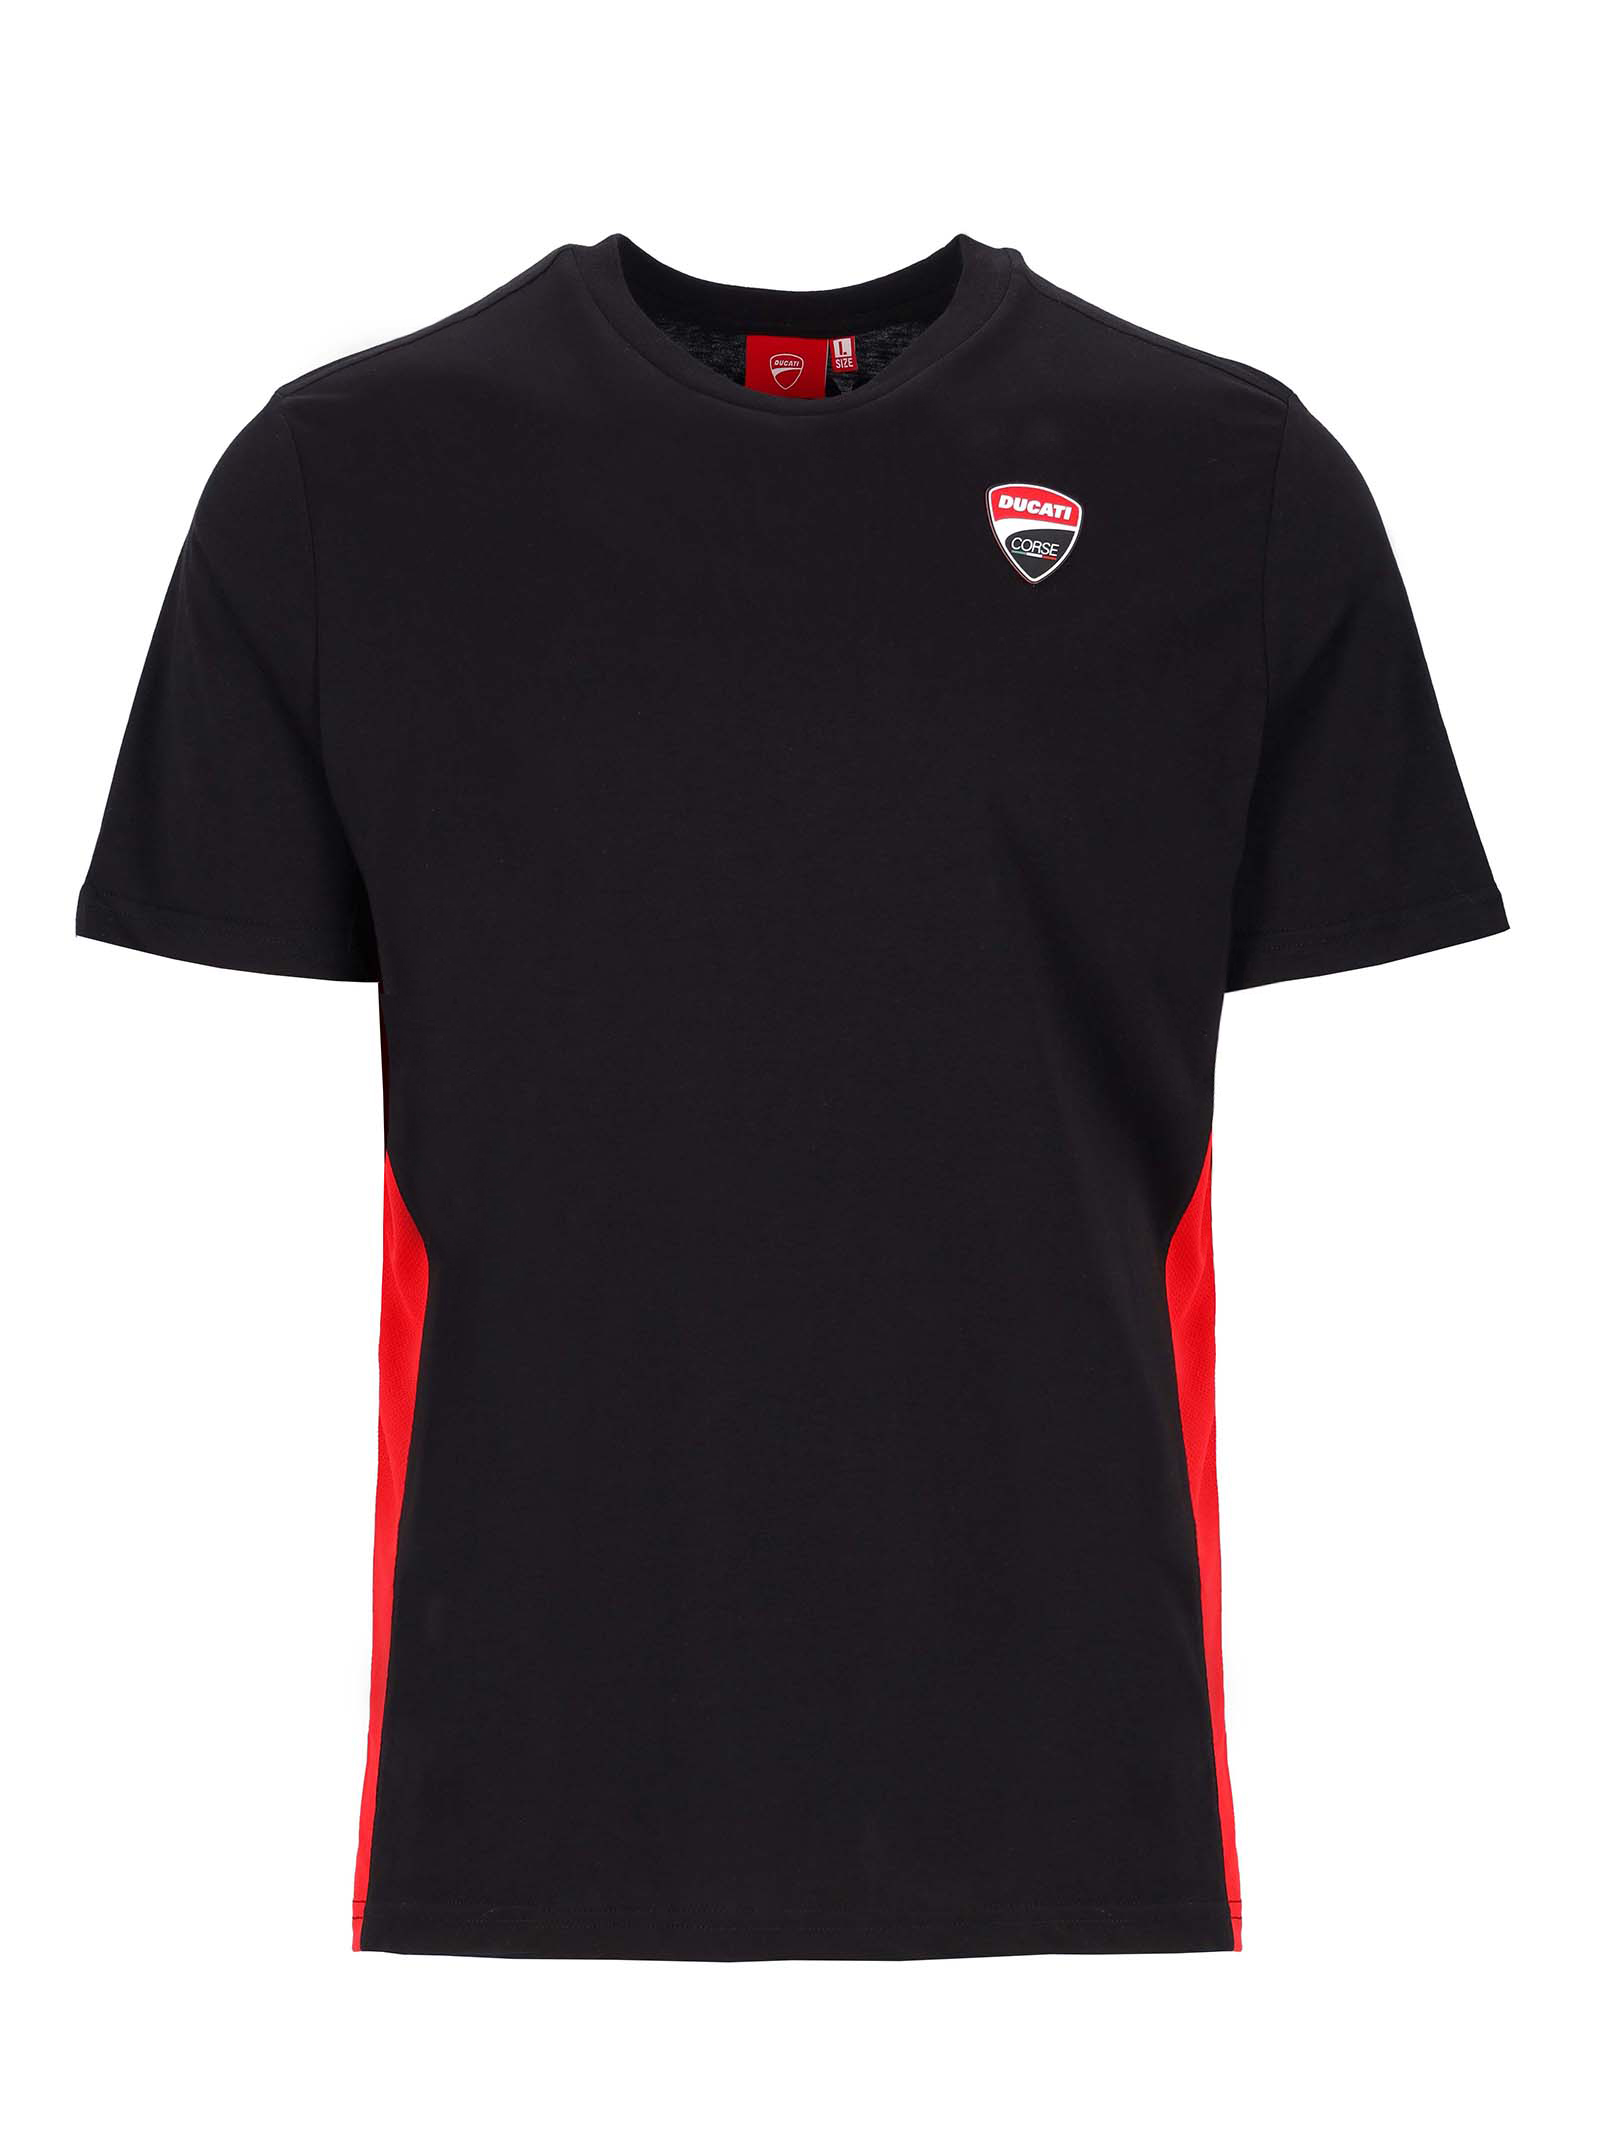 T-shirt Ducati Corse noir avec insert rouge